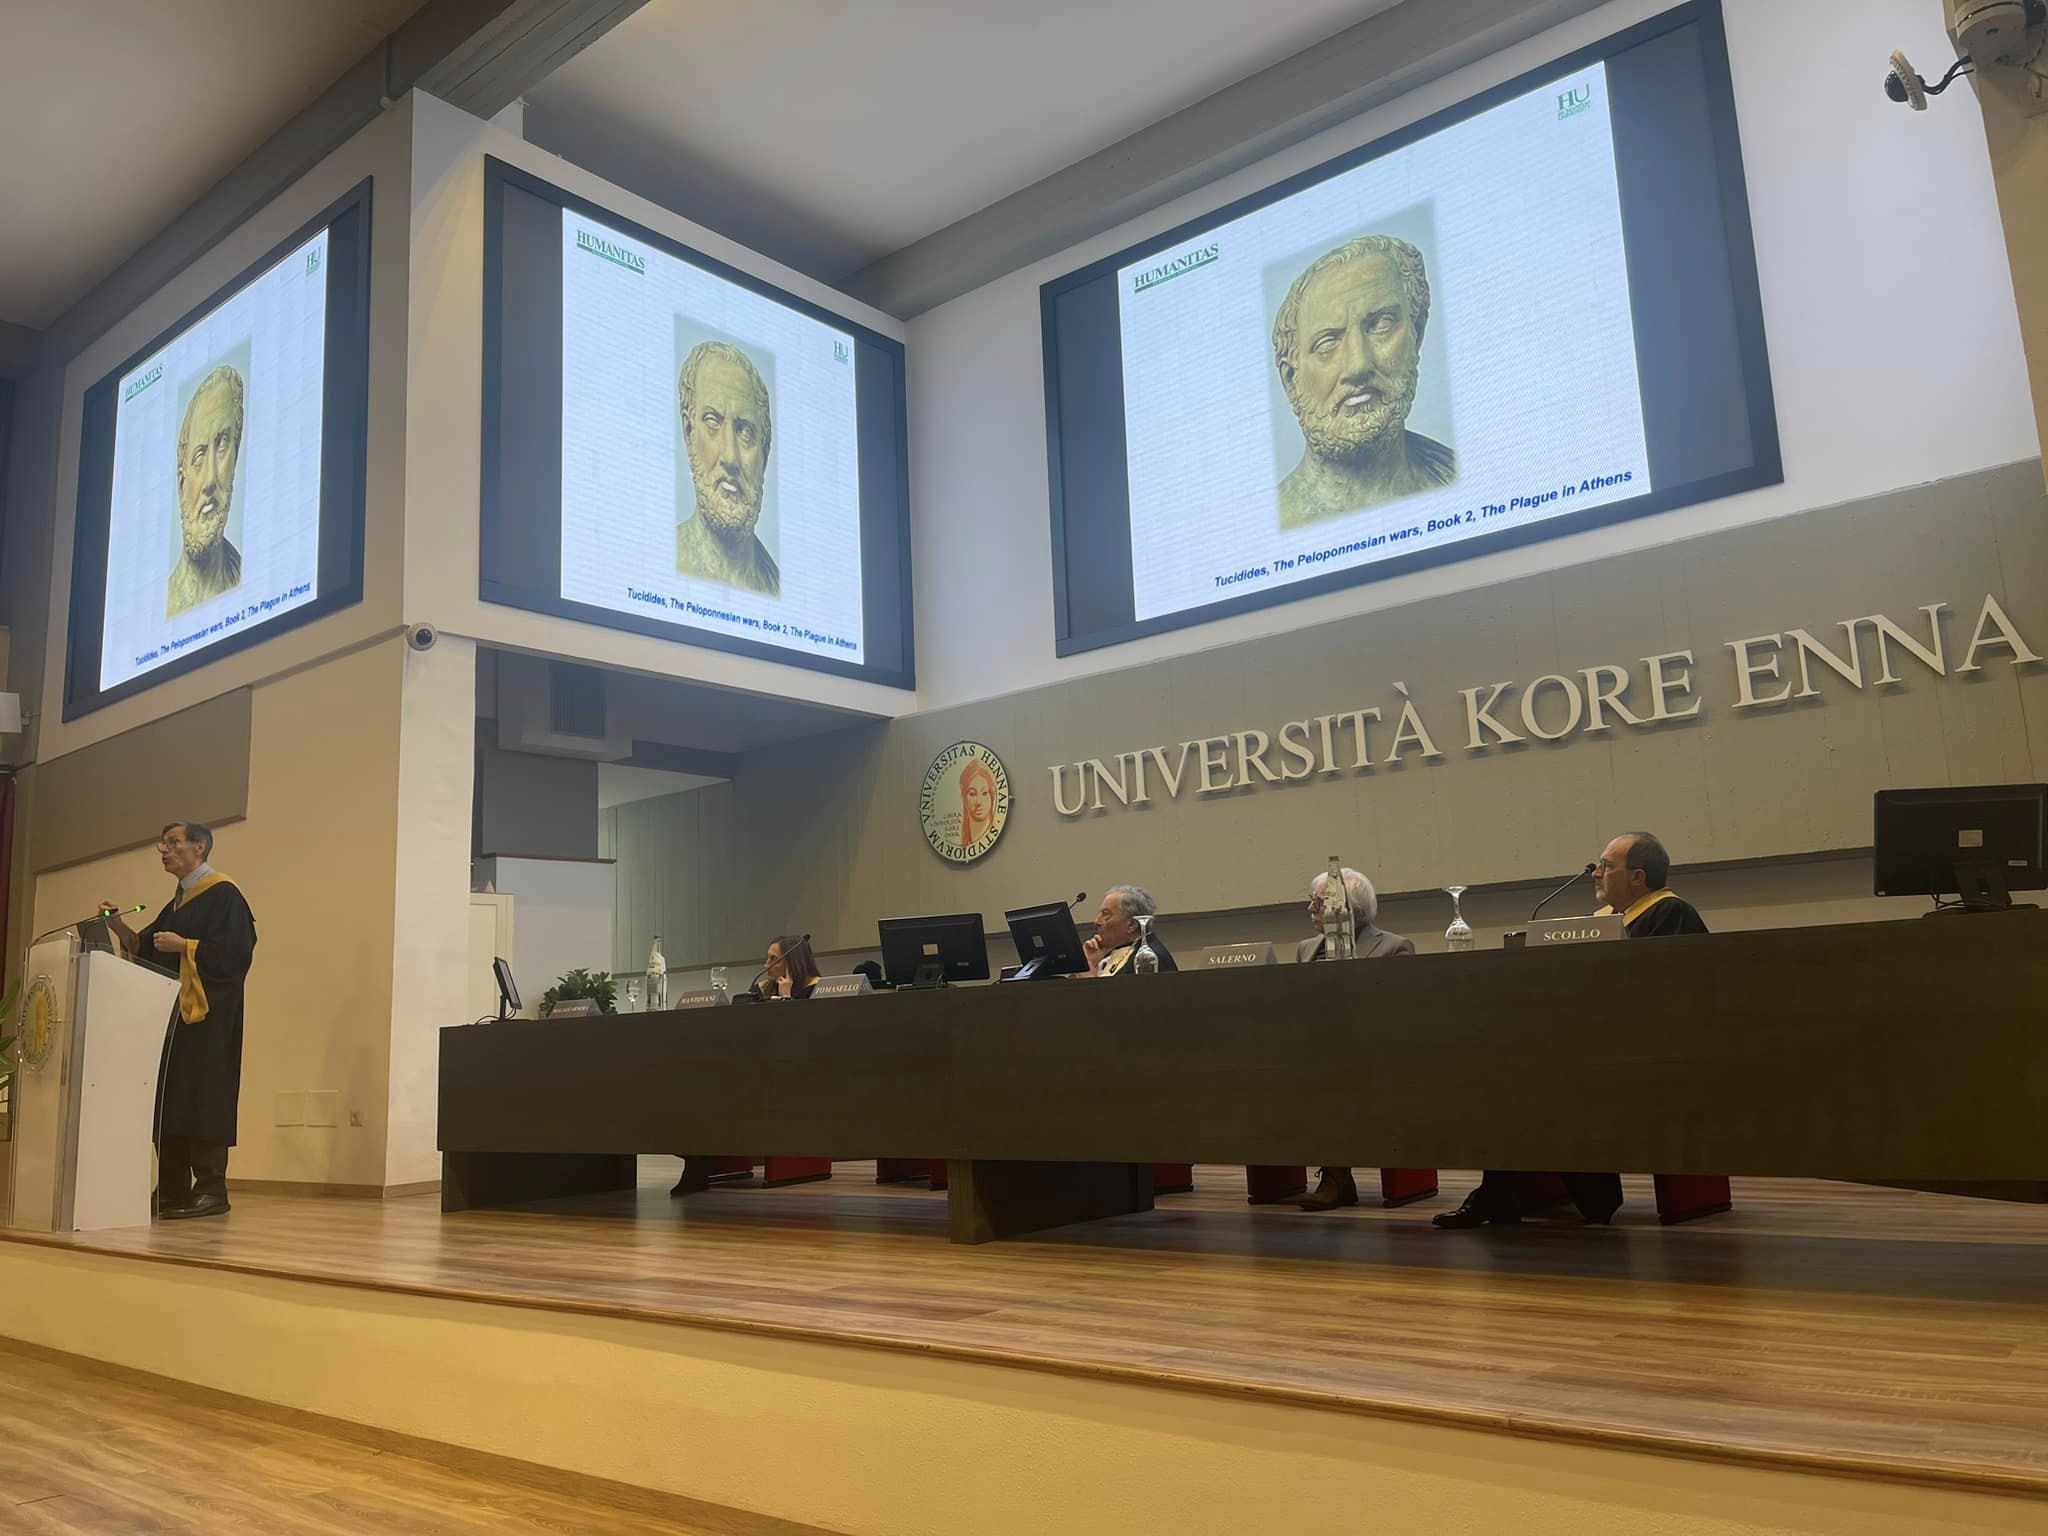 Costi e Convenzioni dell'Università KORE